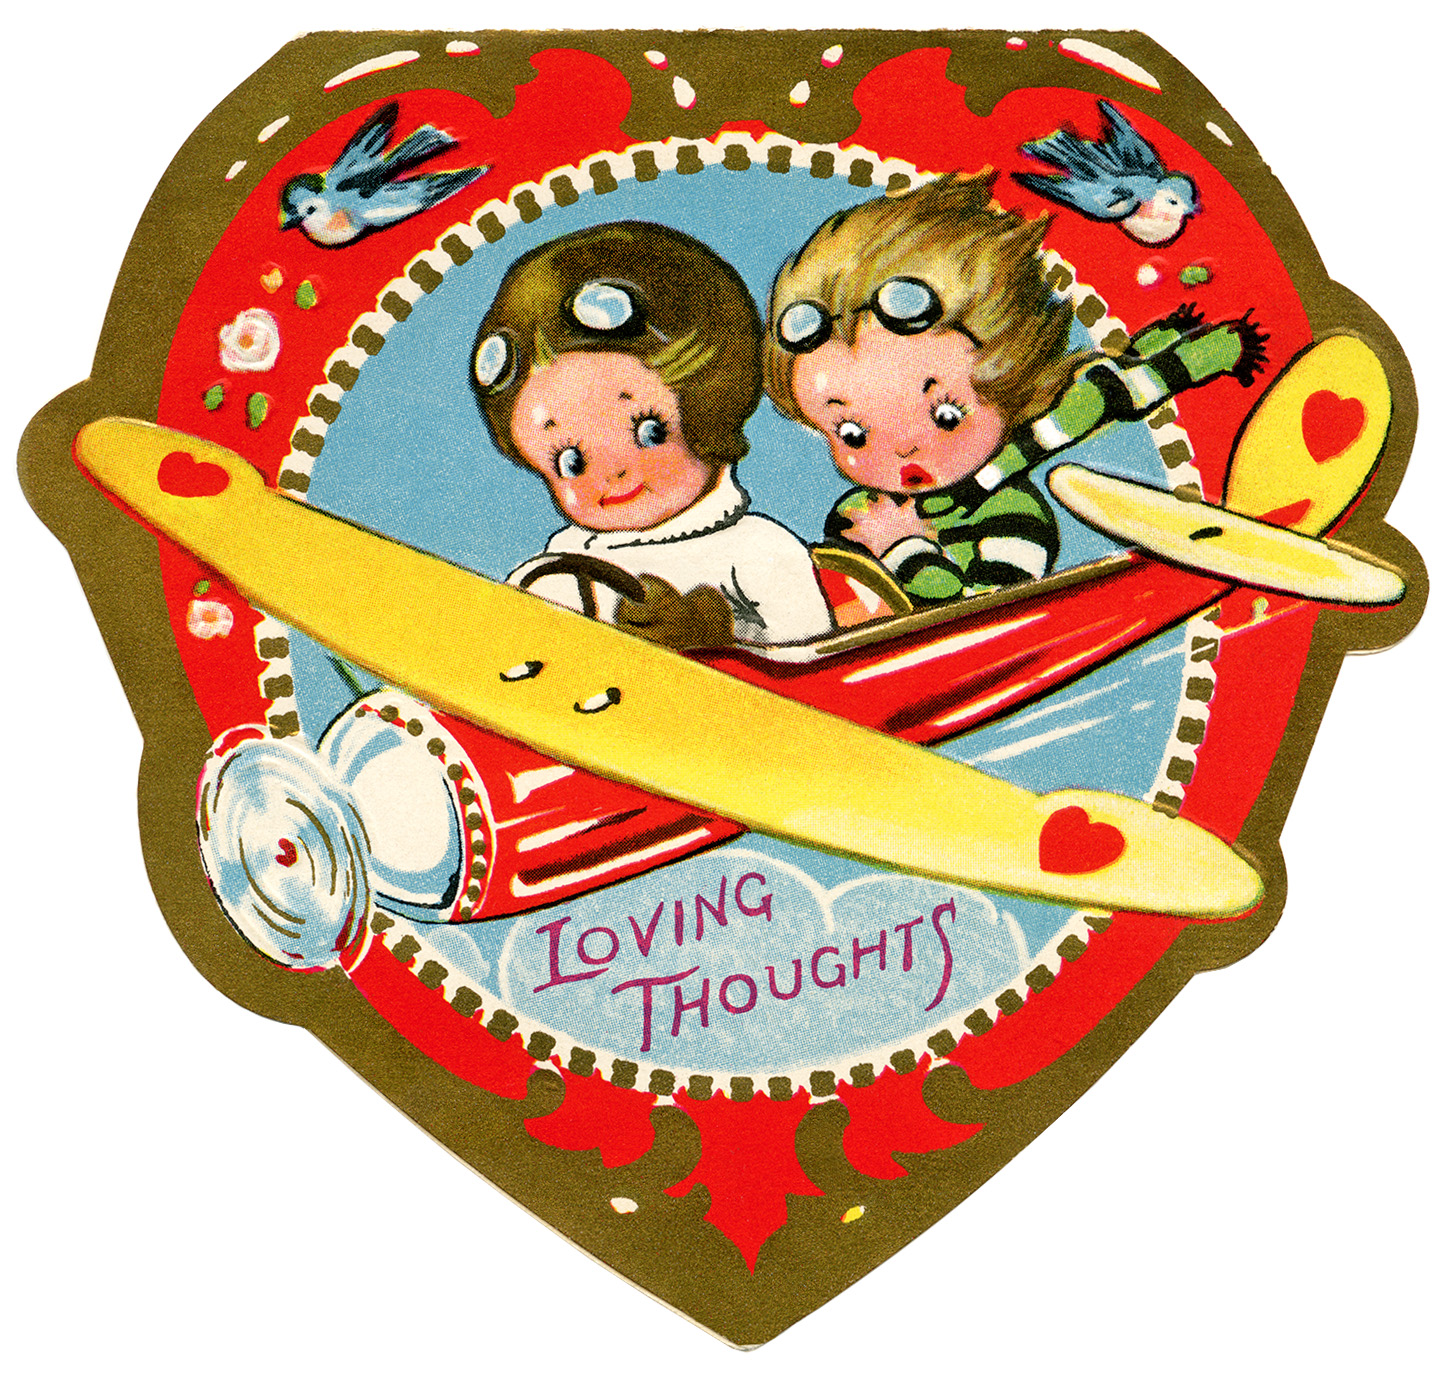 biplane valentine, vintage valentine clip art, airplane valentine card, retro valentine card, printable valentines, old fashioned kids valentine